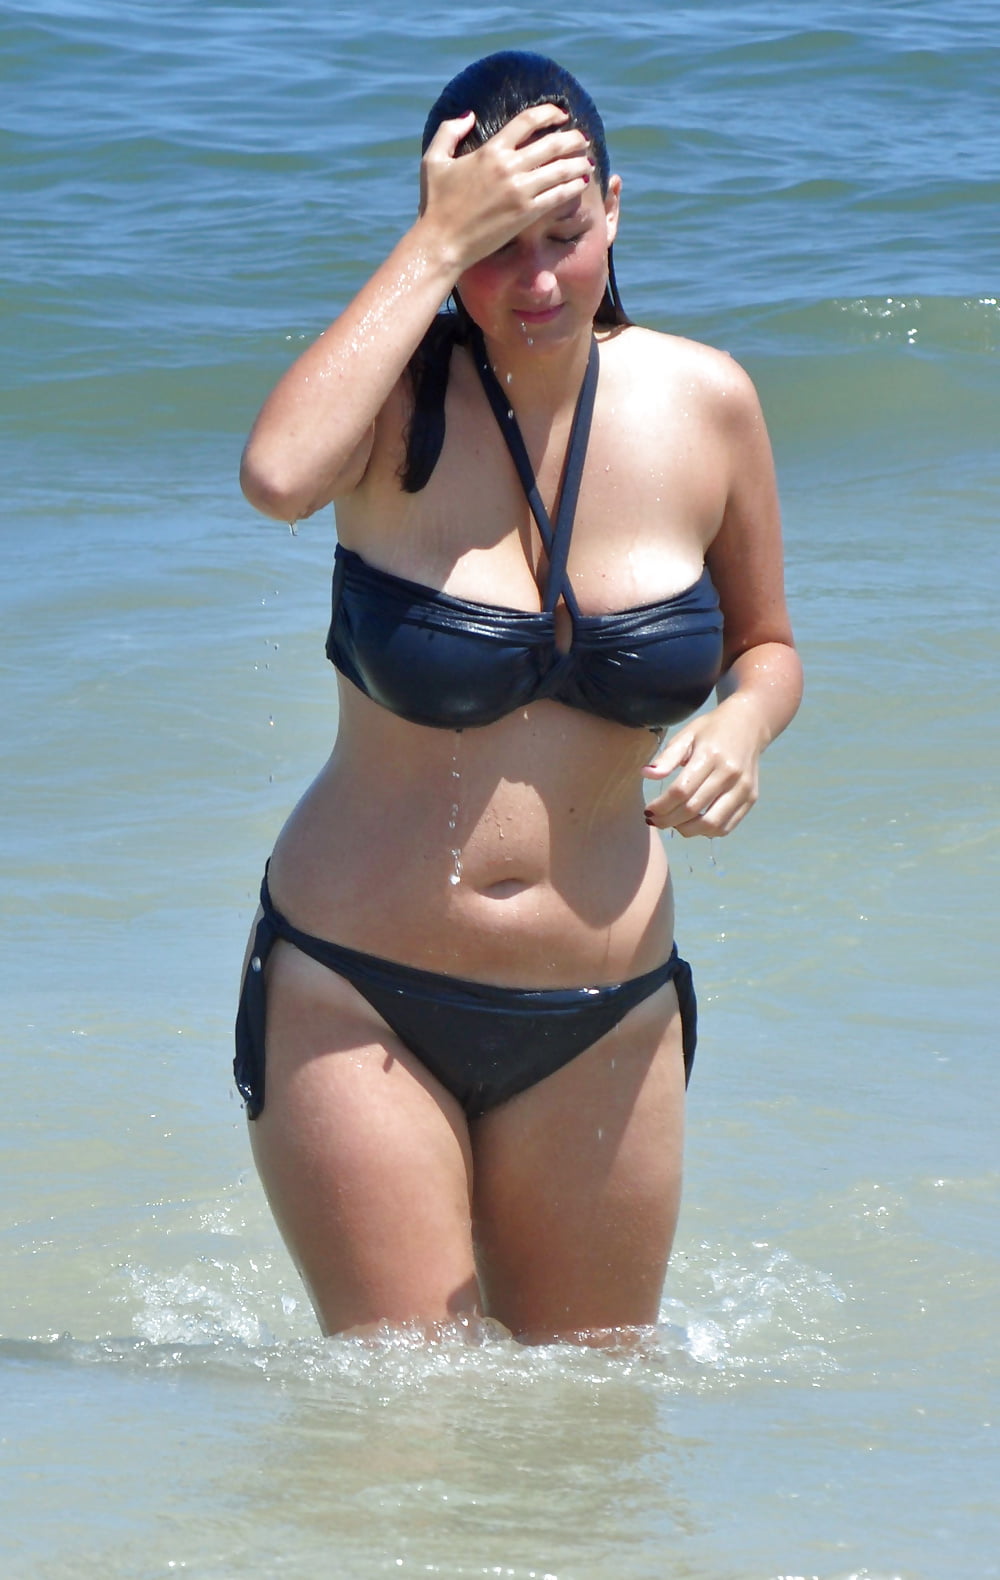 Free Nice 118 (chubby and curvy on the beach) photos